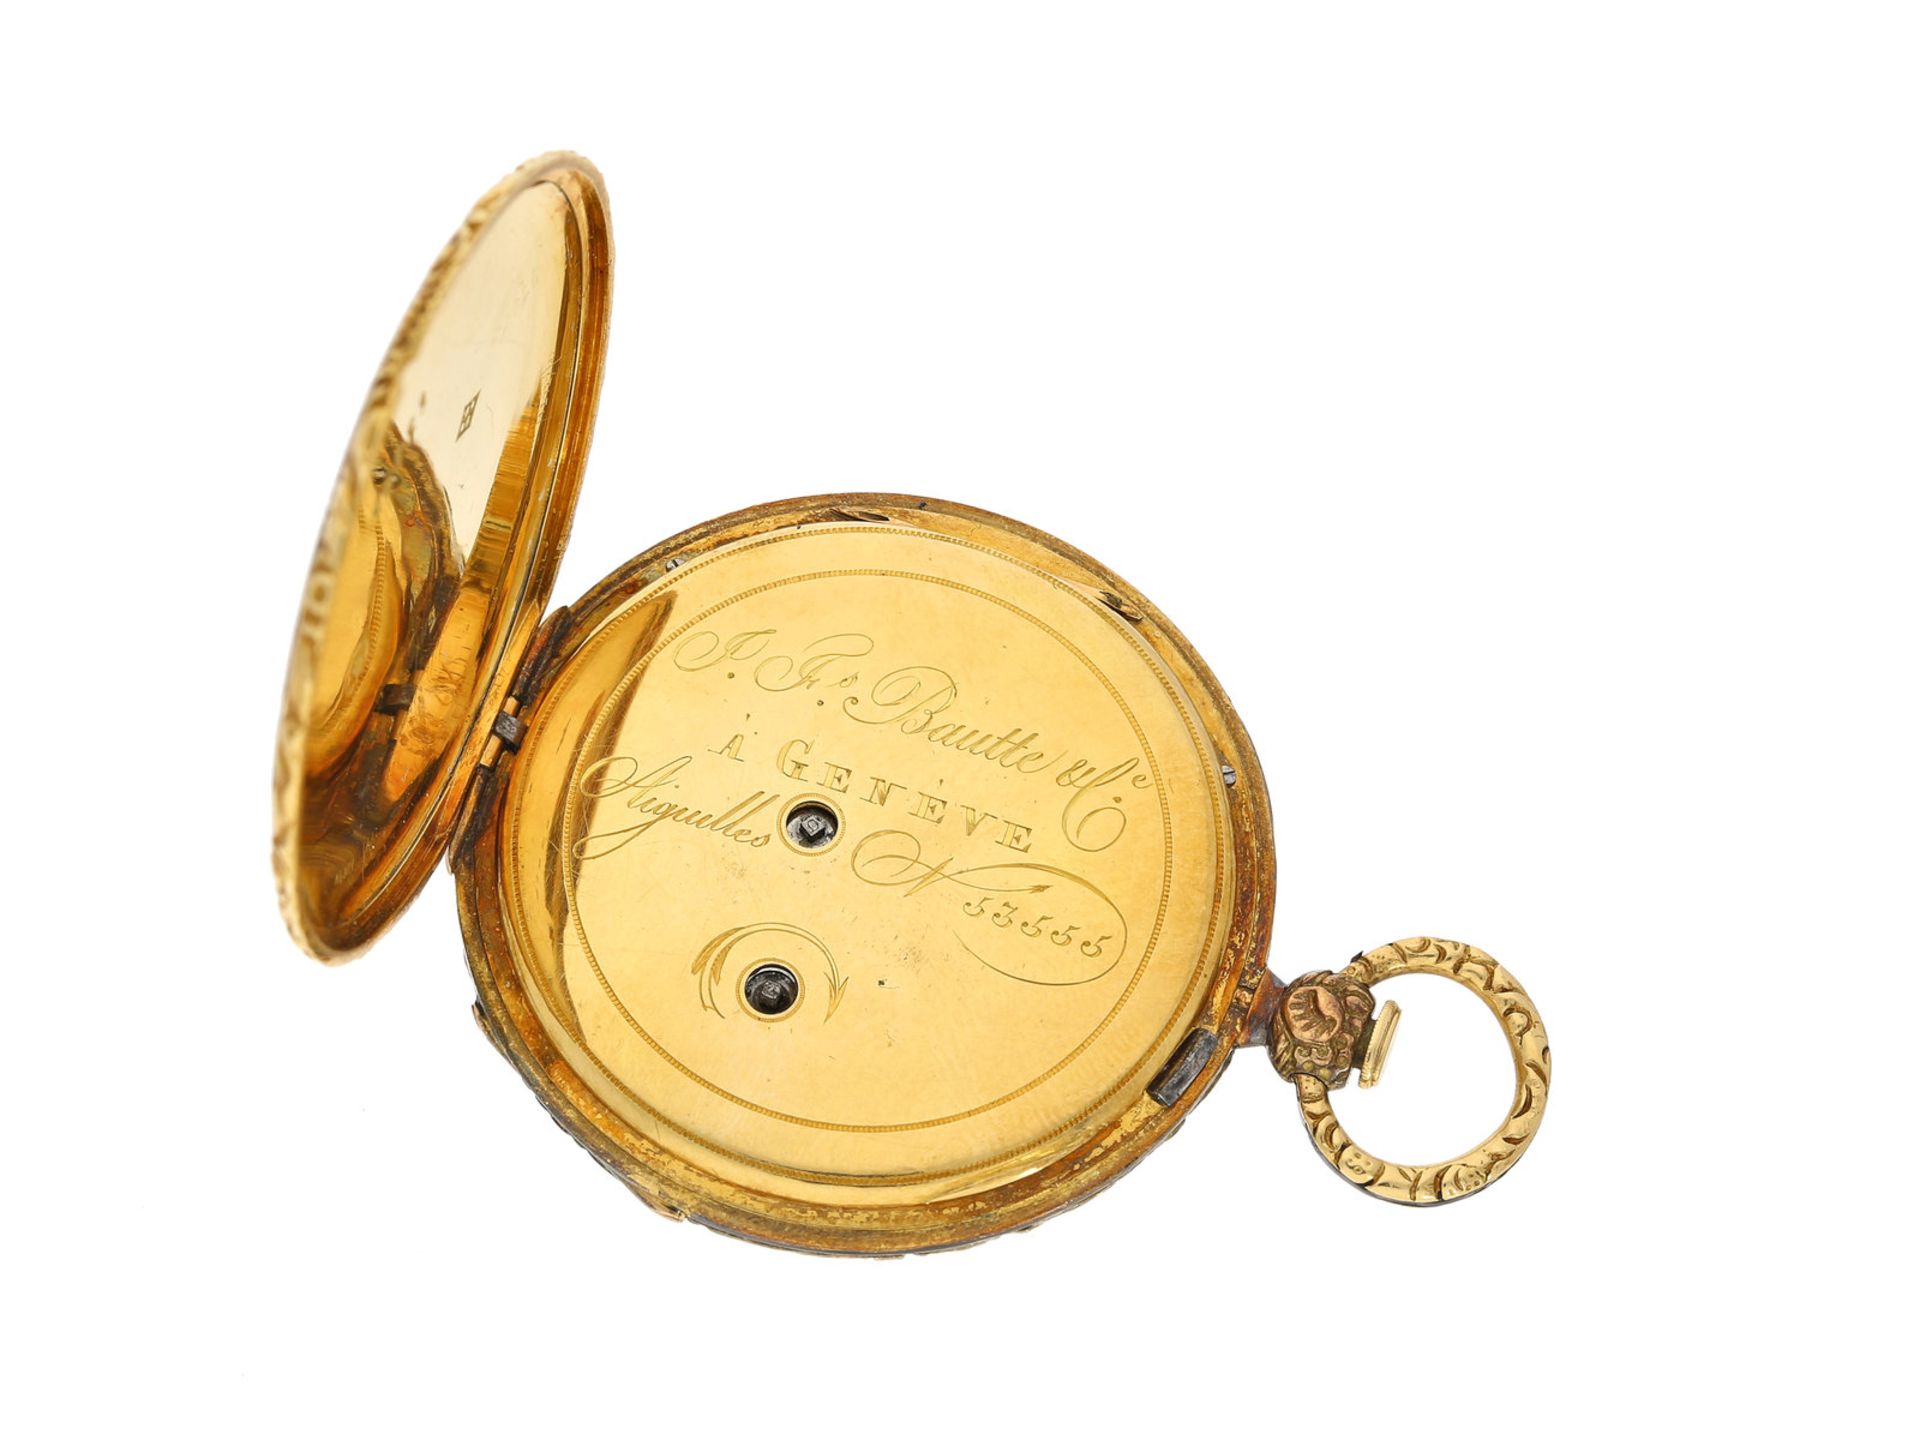 Taschenuhr: Rarität, hochfeine Gold/Emailleuhr mit dezentralem Zifferblatt, ehemaliger - Bild 4 aus 4